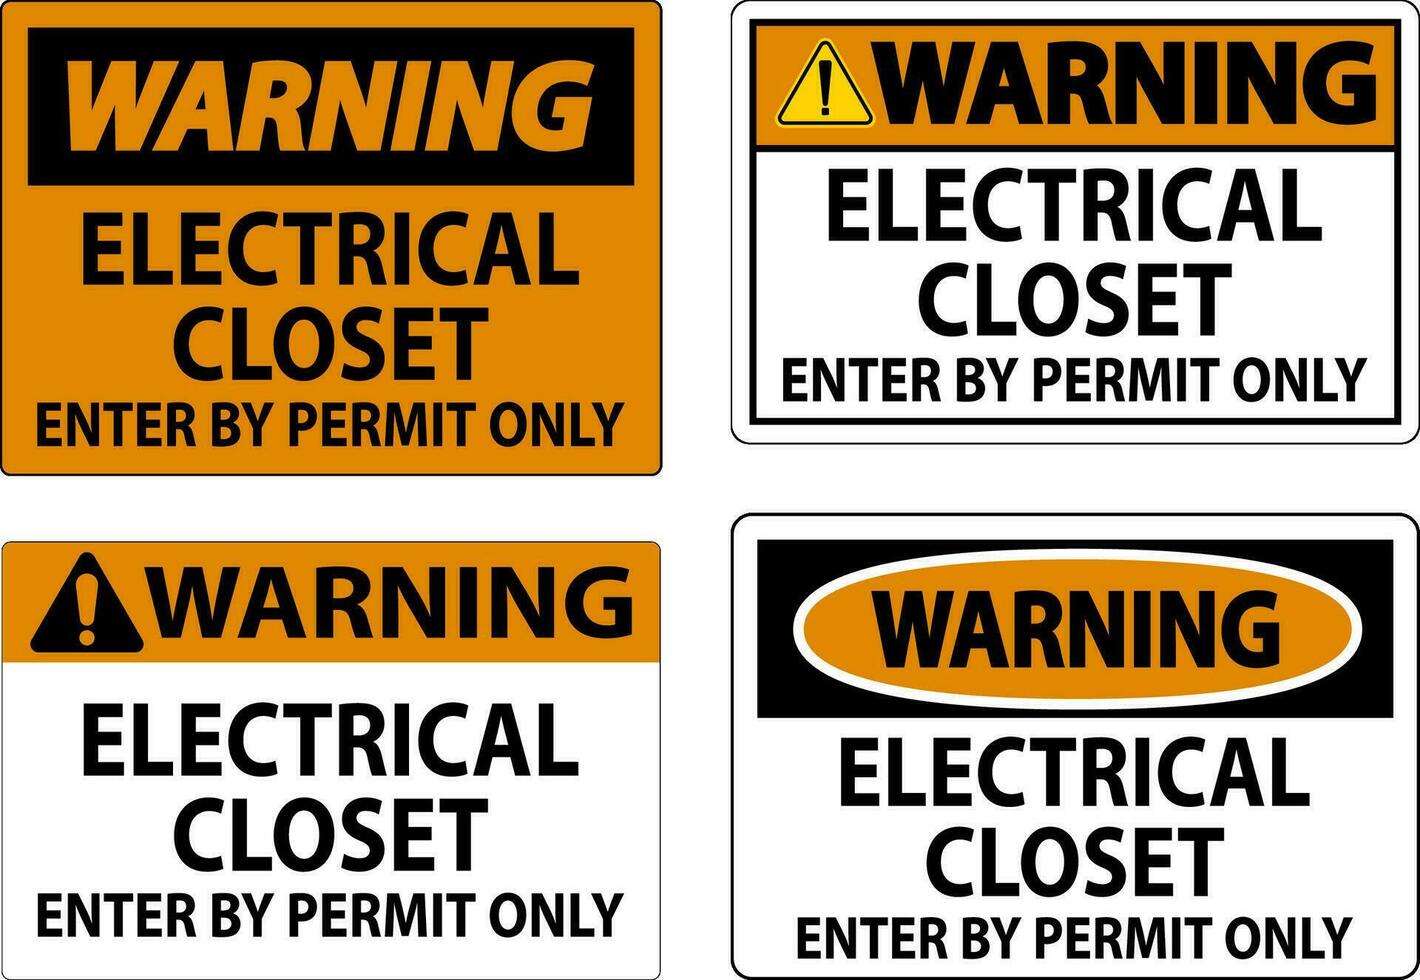 varning tecken elektrisk garderob - stiga på förbi tillåta endast vektor